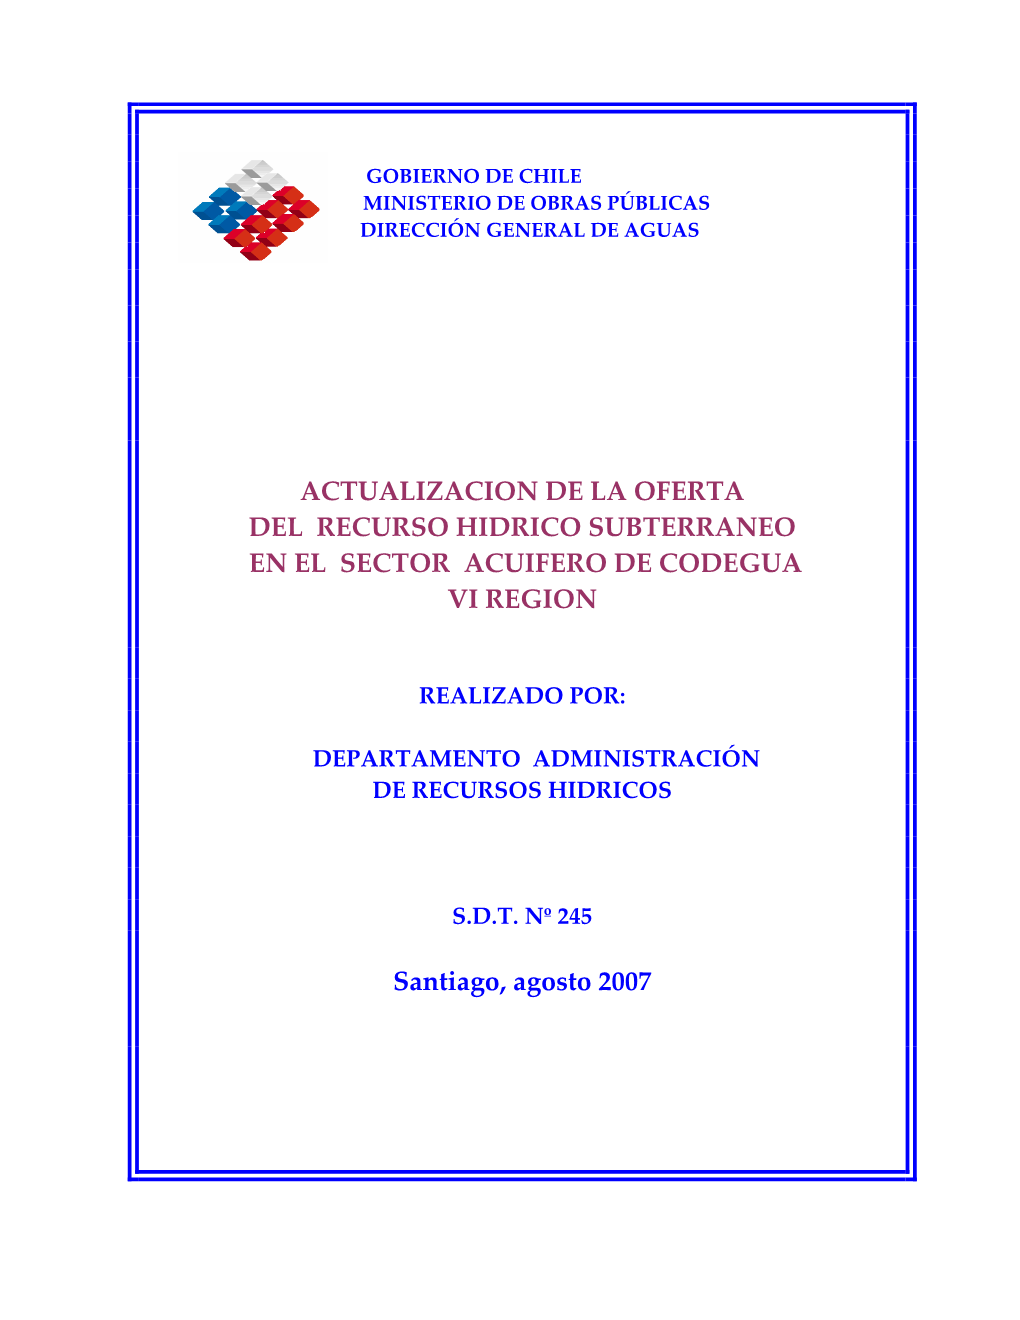 Actualizacion De La Oferta Del Recurso Hidrico Subterraneo En El Sector Acuifero De Codegua Vi Region